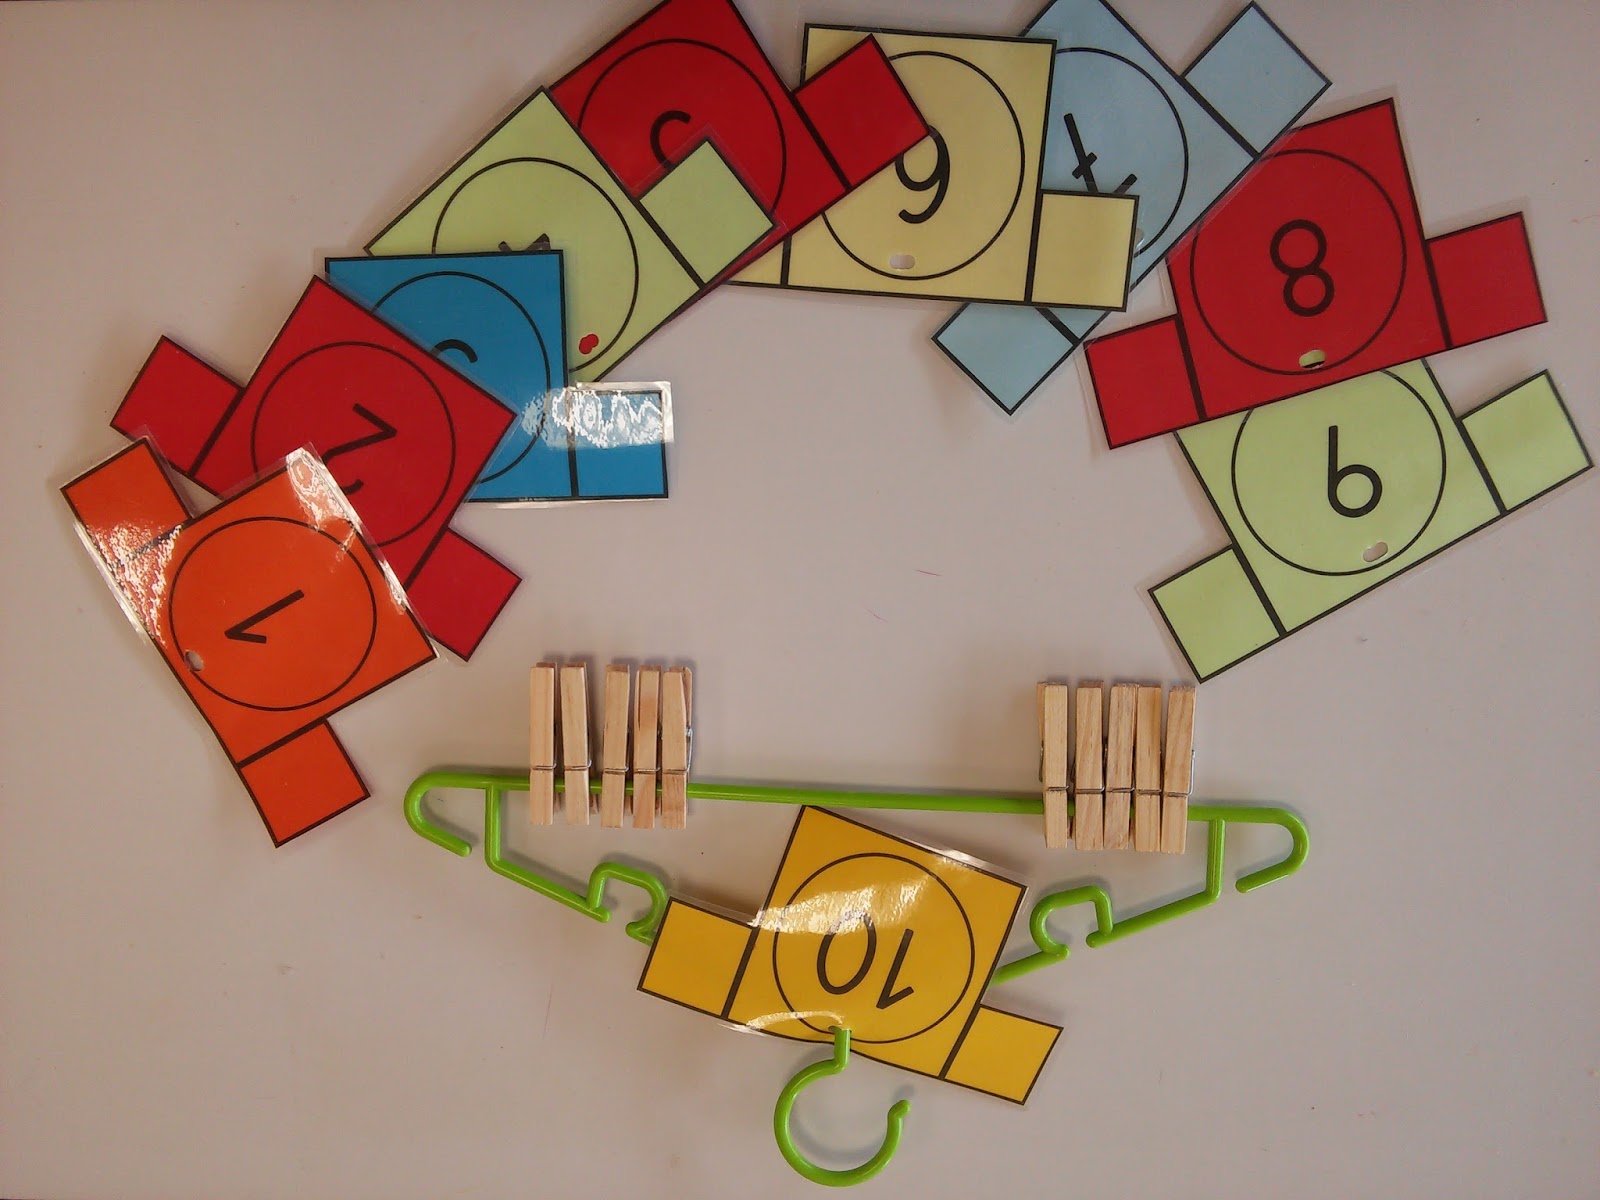 Juegos para trabajar las matematicas numeros y conteo (6) - Imagenes Educativas